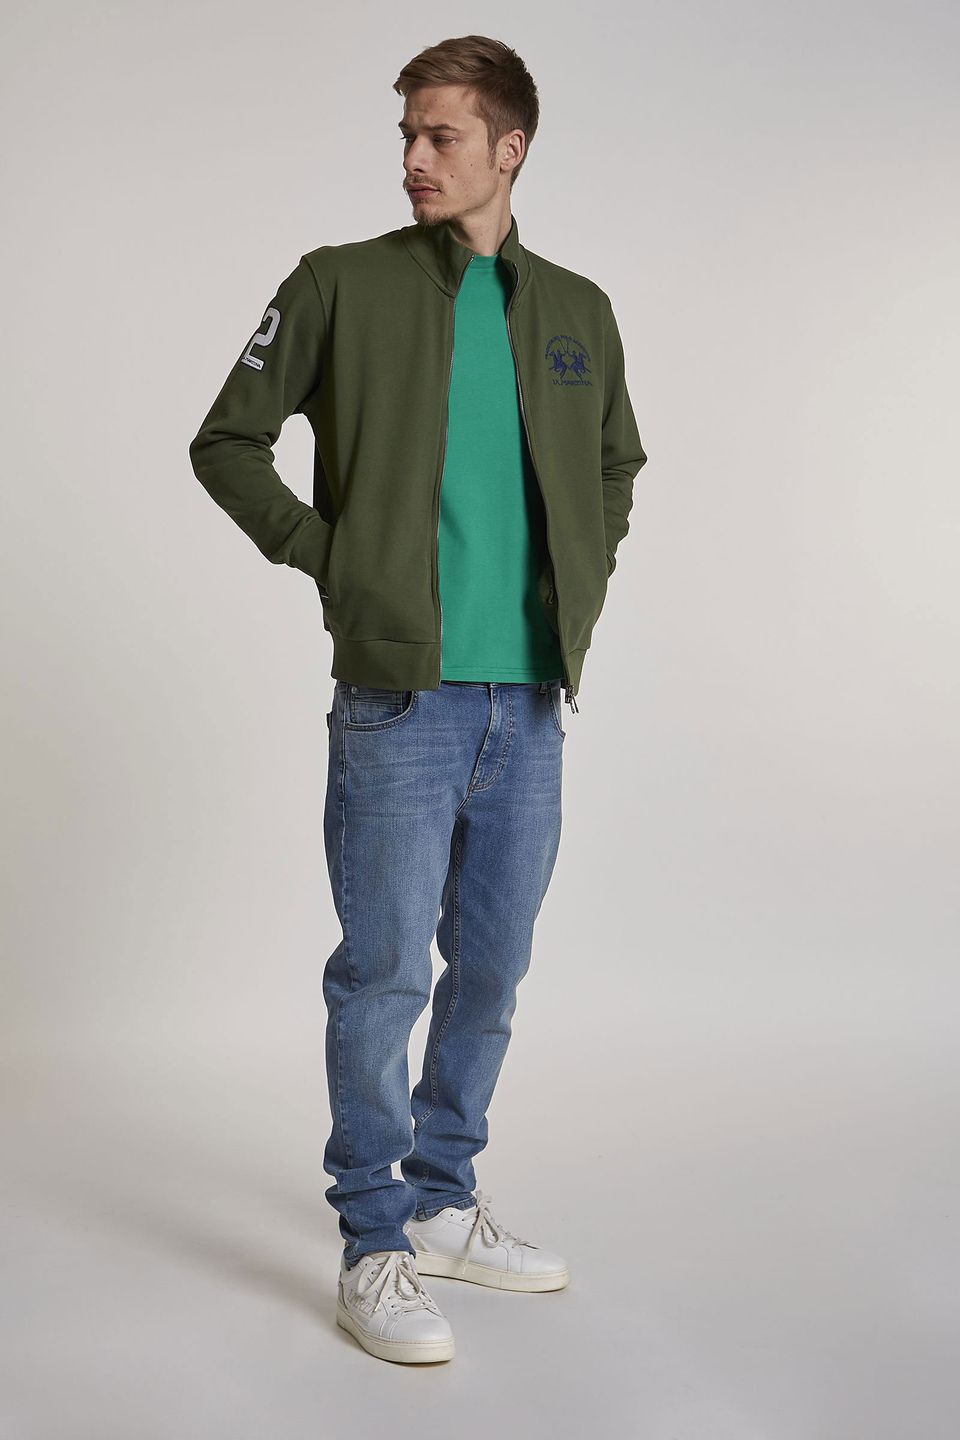 Men's regular-fit high-neck zip-up sweatshirt - La Martina - Official Online Shop